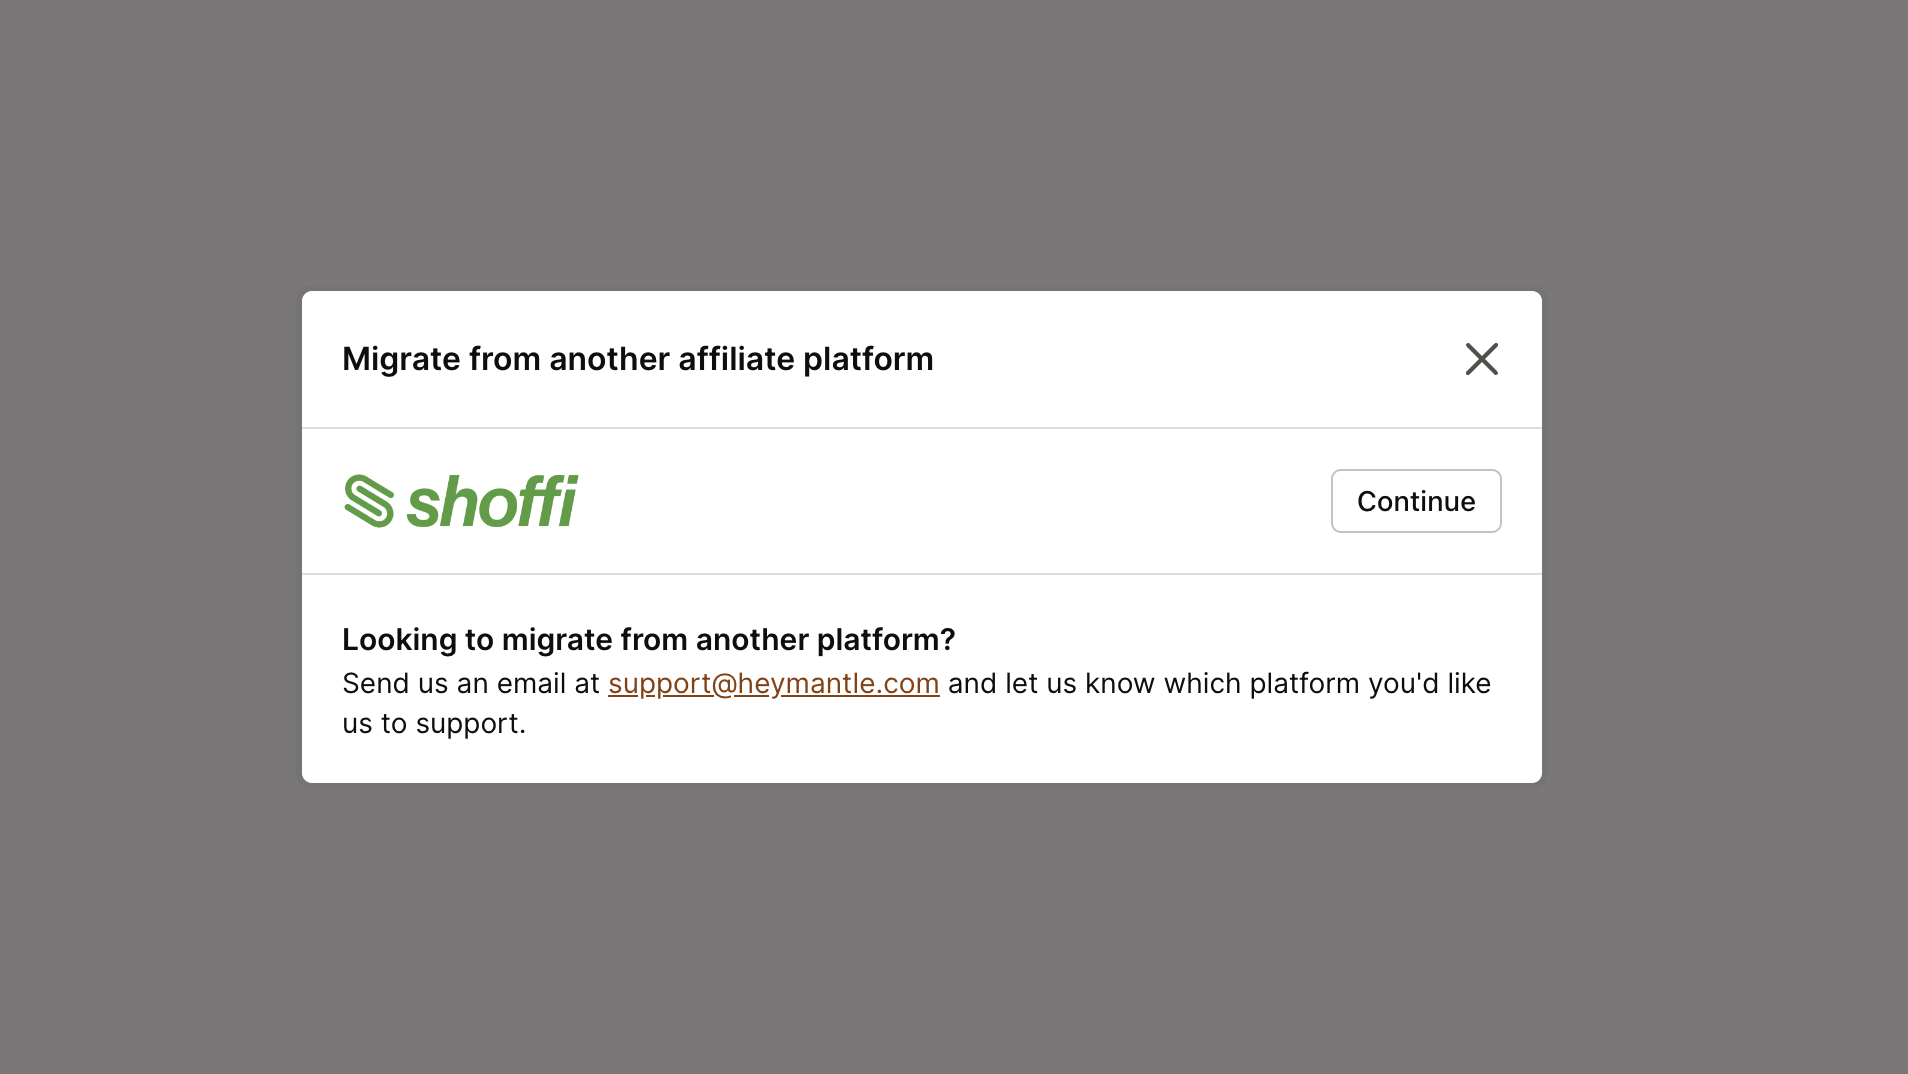 Shoffi migration selection button